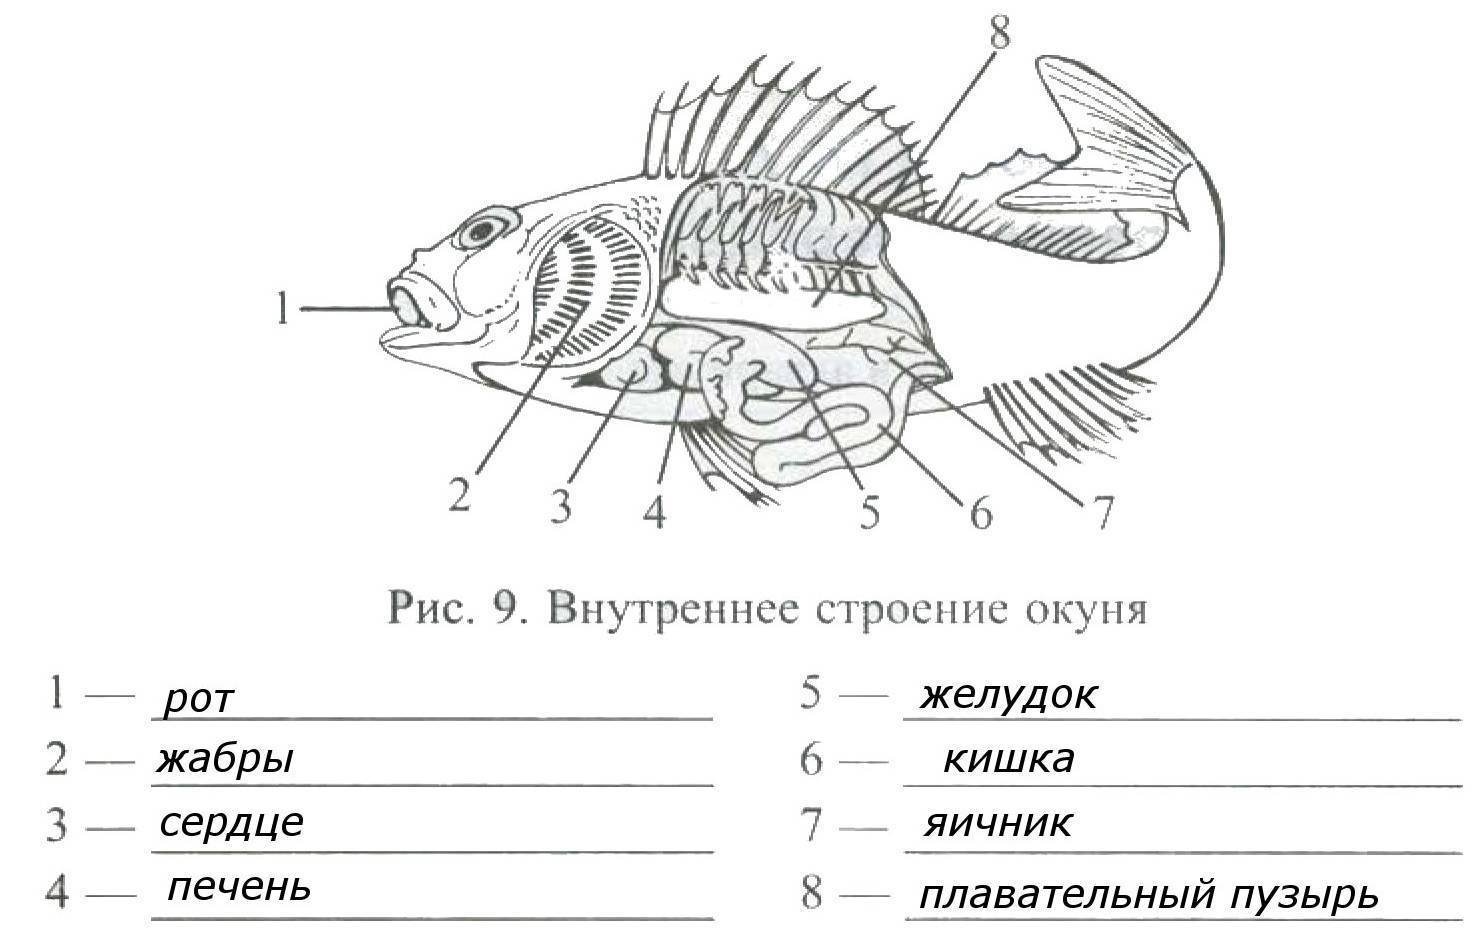 Тест по рыбам 8 класс. Внутренне строение речного окуня. Внутреннее строение окуня биология 7 класс. Внешнее и внутреннее строение рыбы 7 класс биология. Внутреннее строение окуня биология 7 класс рисунок.